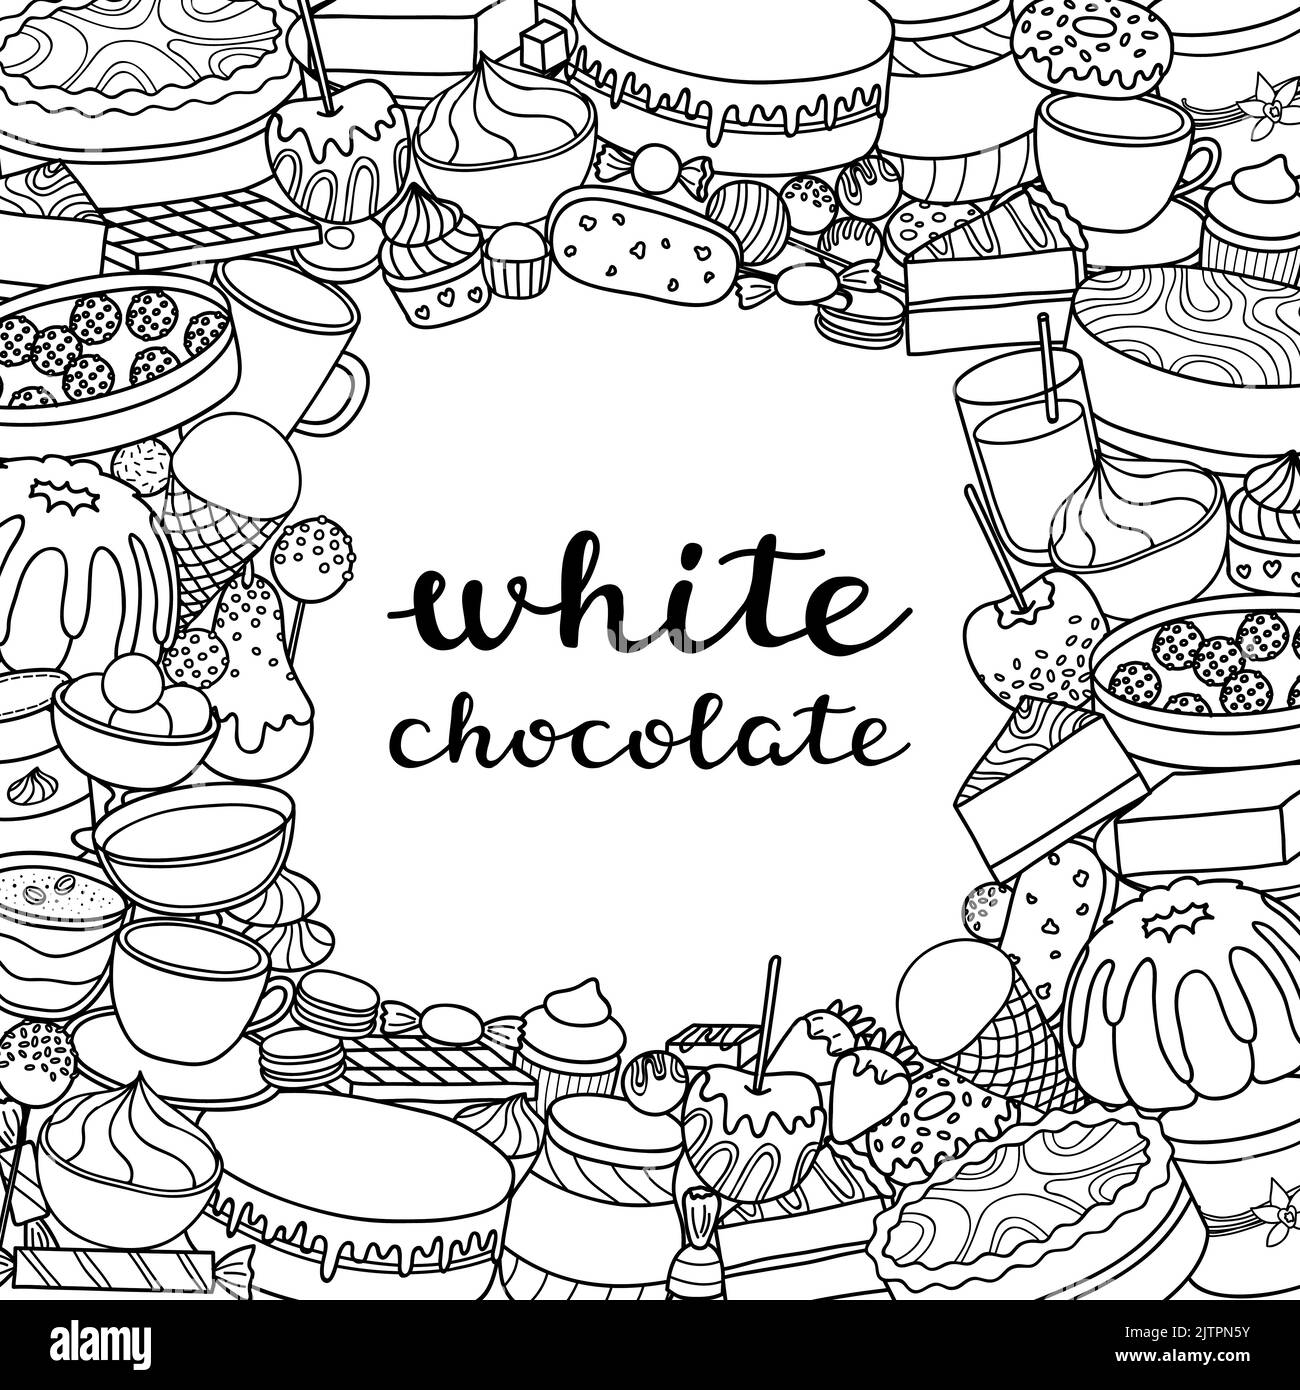 Sfondo quadrato con diversi dolci al cioccolato bianco, dolci e scritte color bianco scuro a mano. Design dettagliato della struttura. Maschera di ritaglio utilizzata. Illustrazione Vettoriale